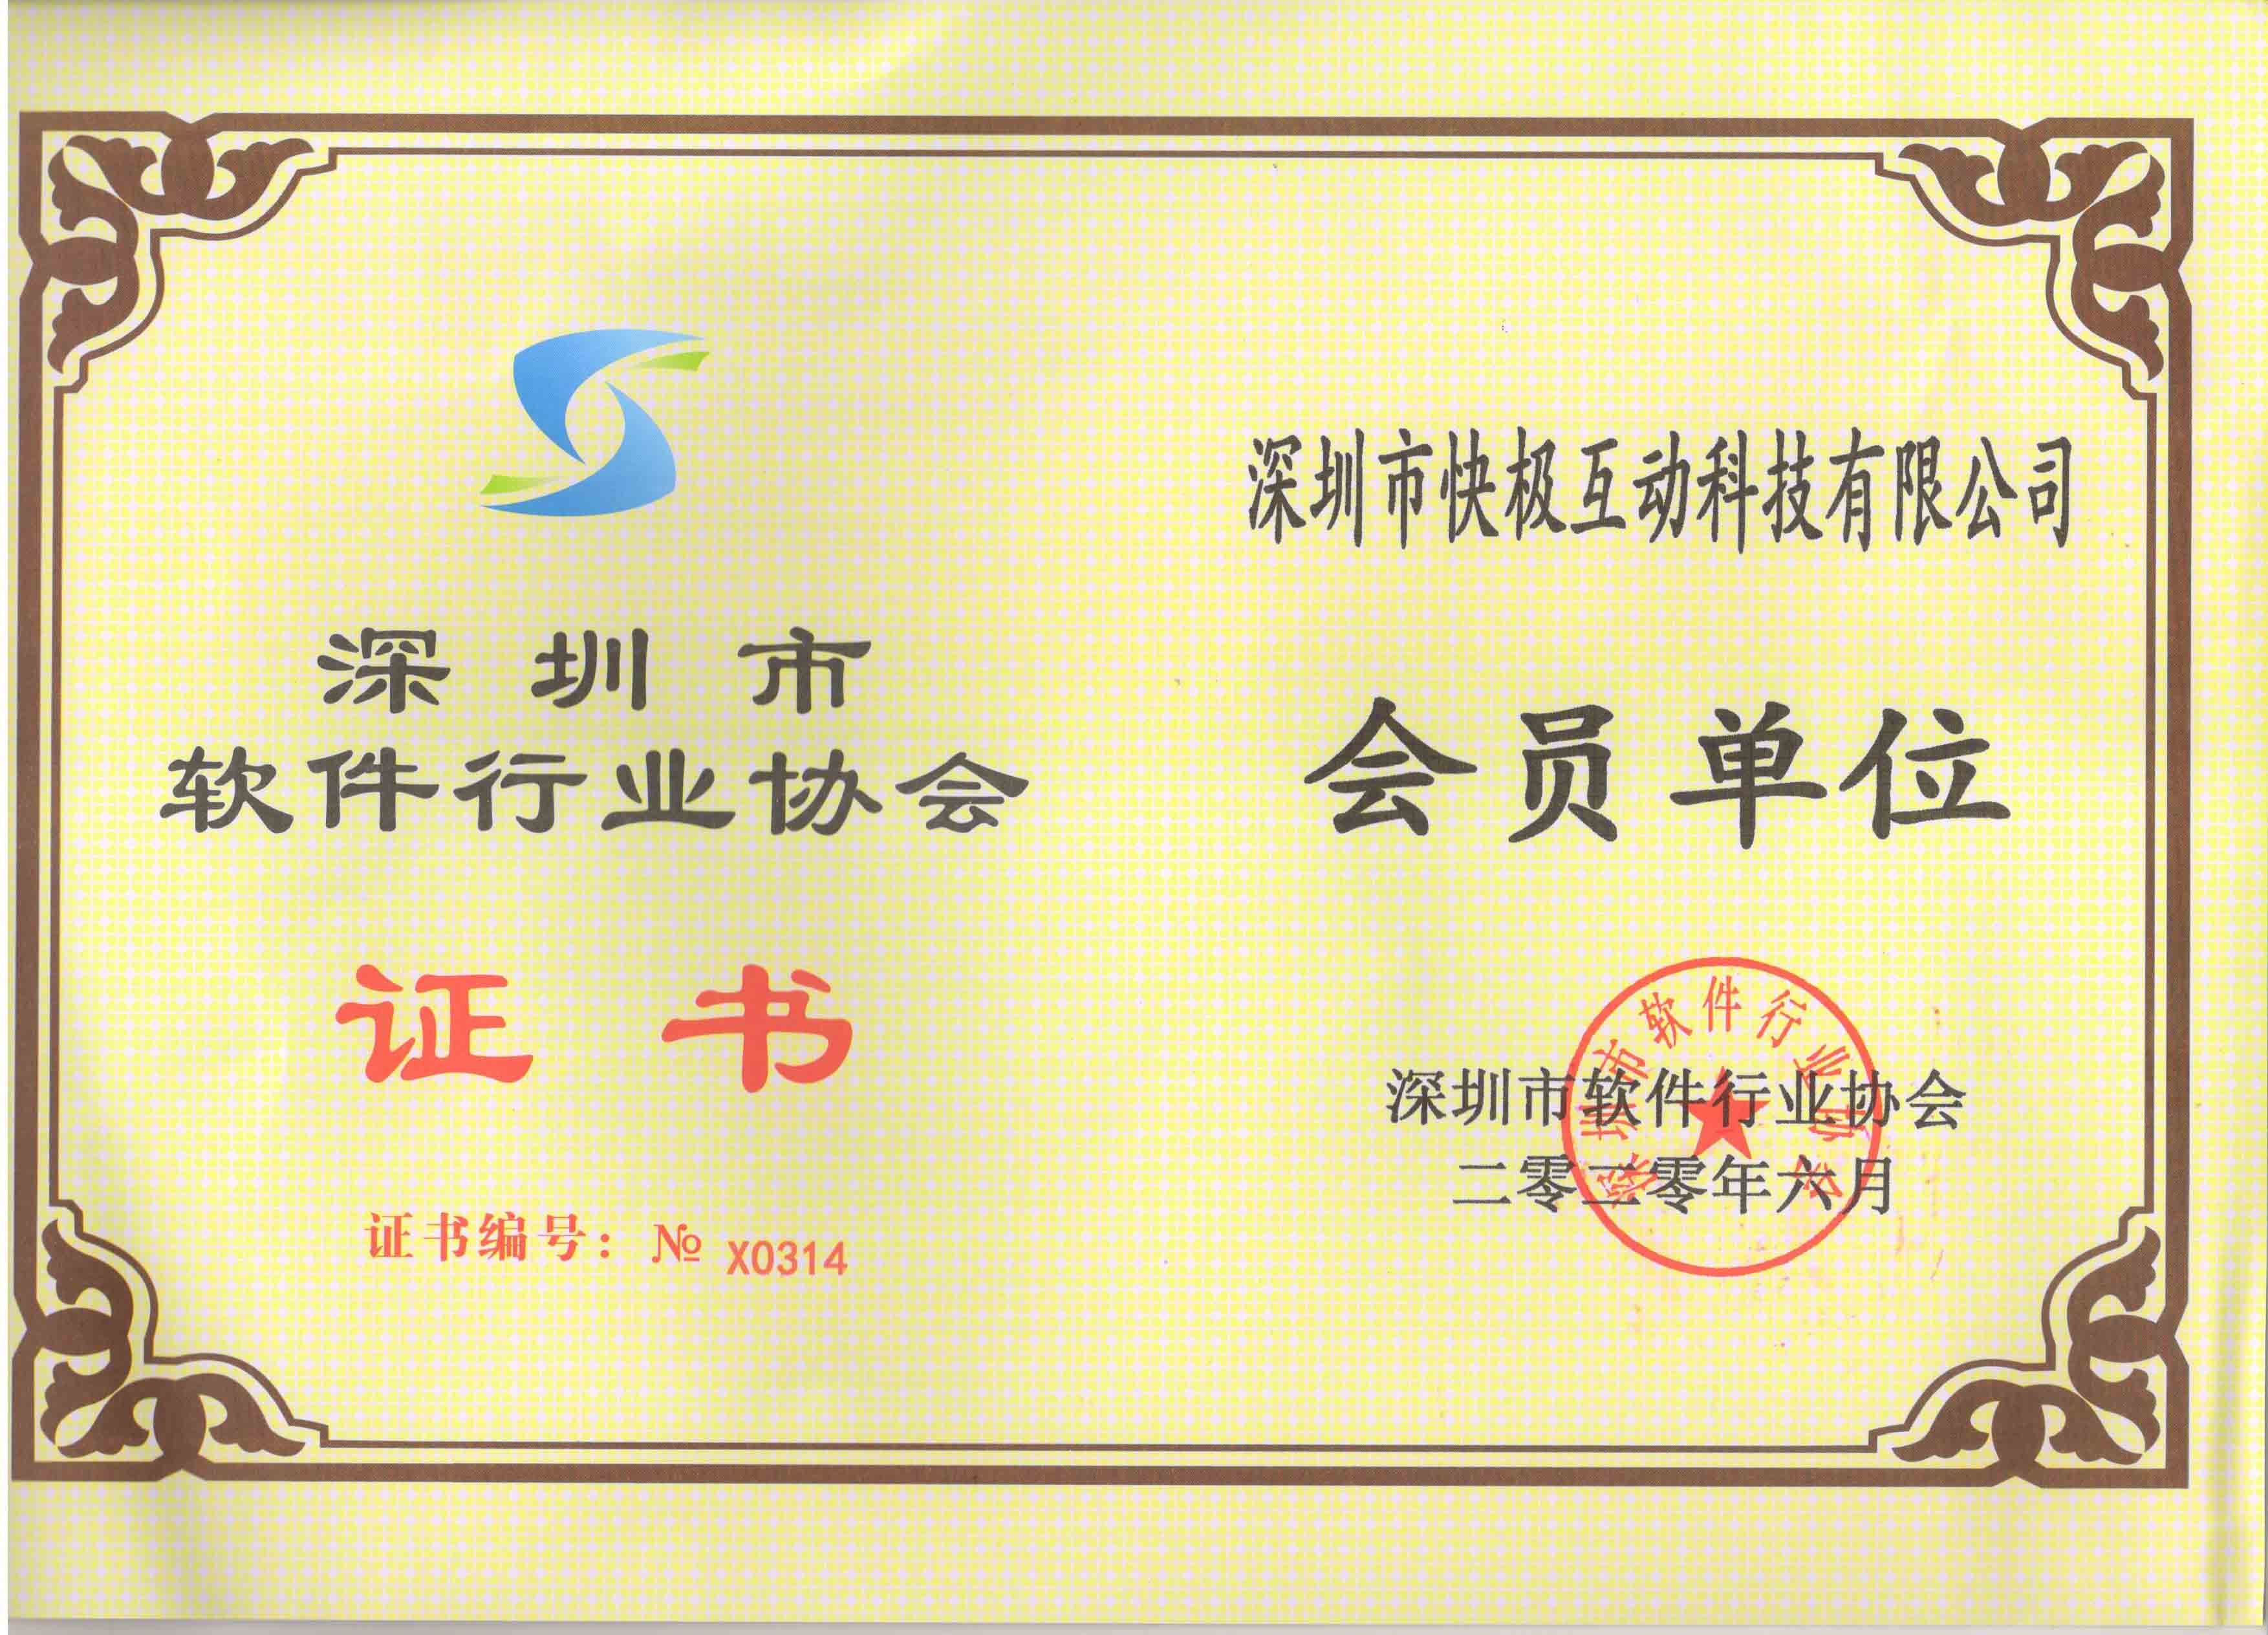 恭喜公司获得双软认证证书